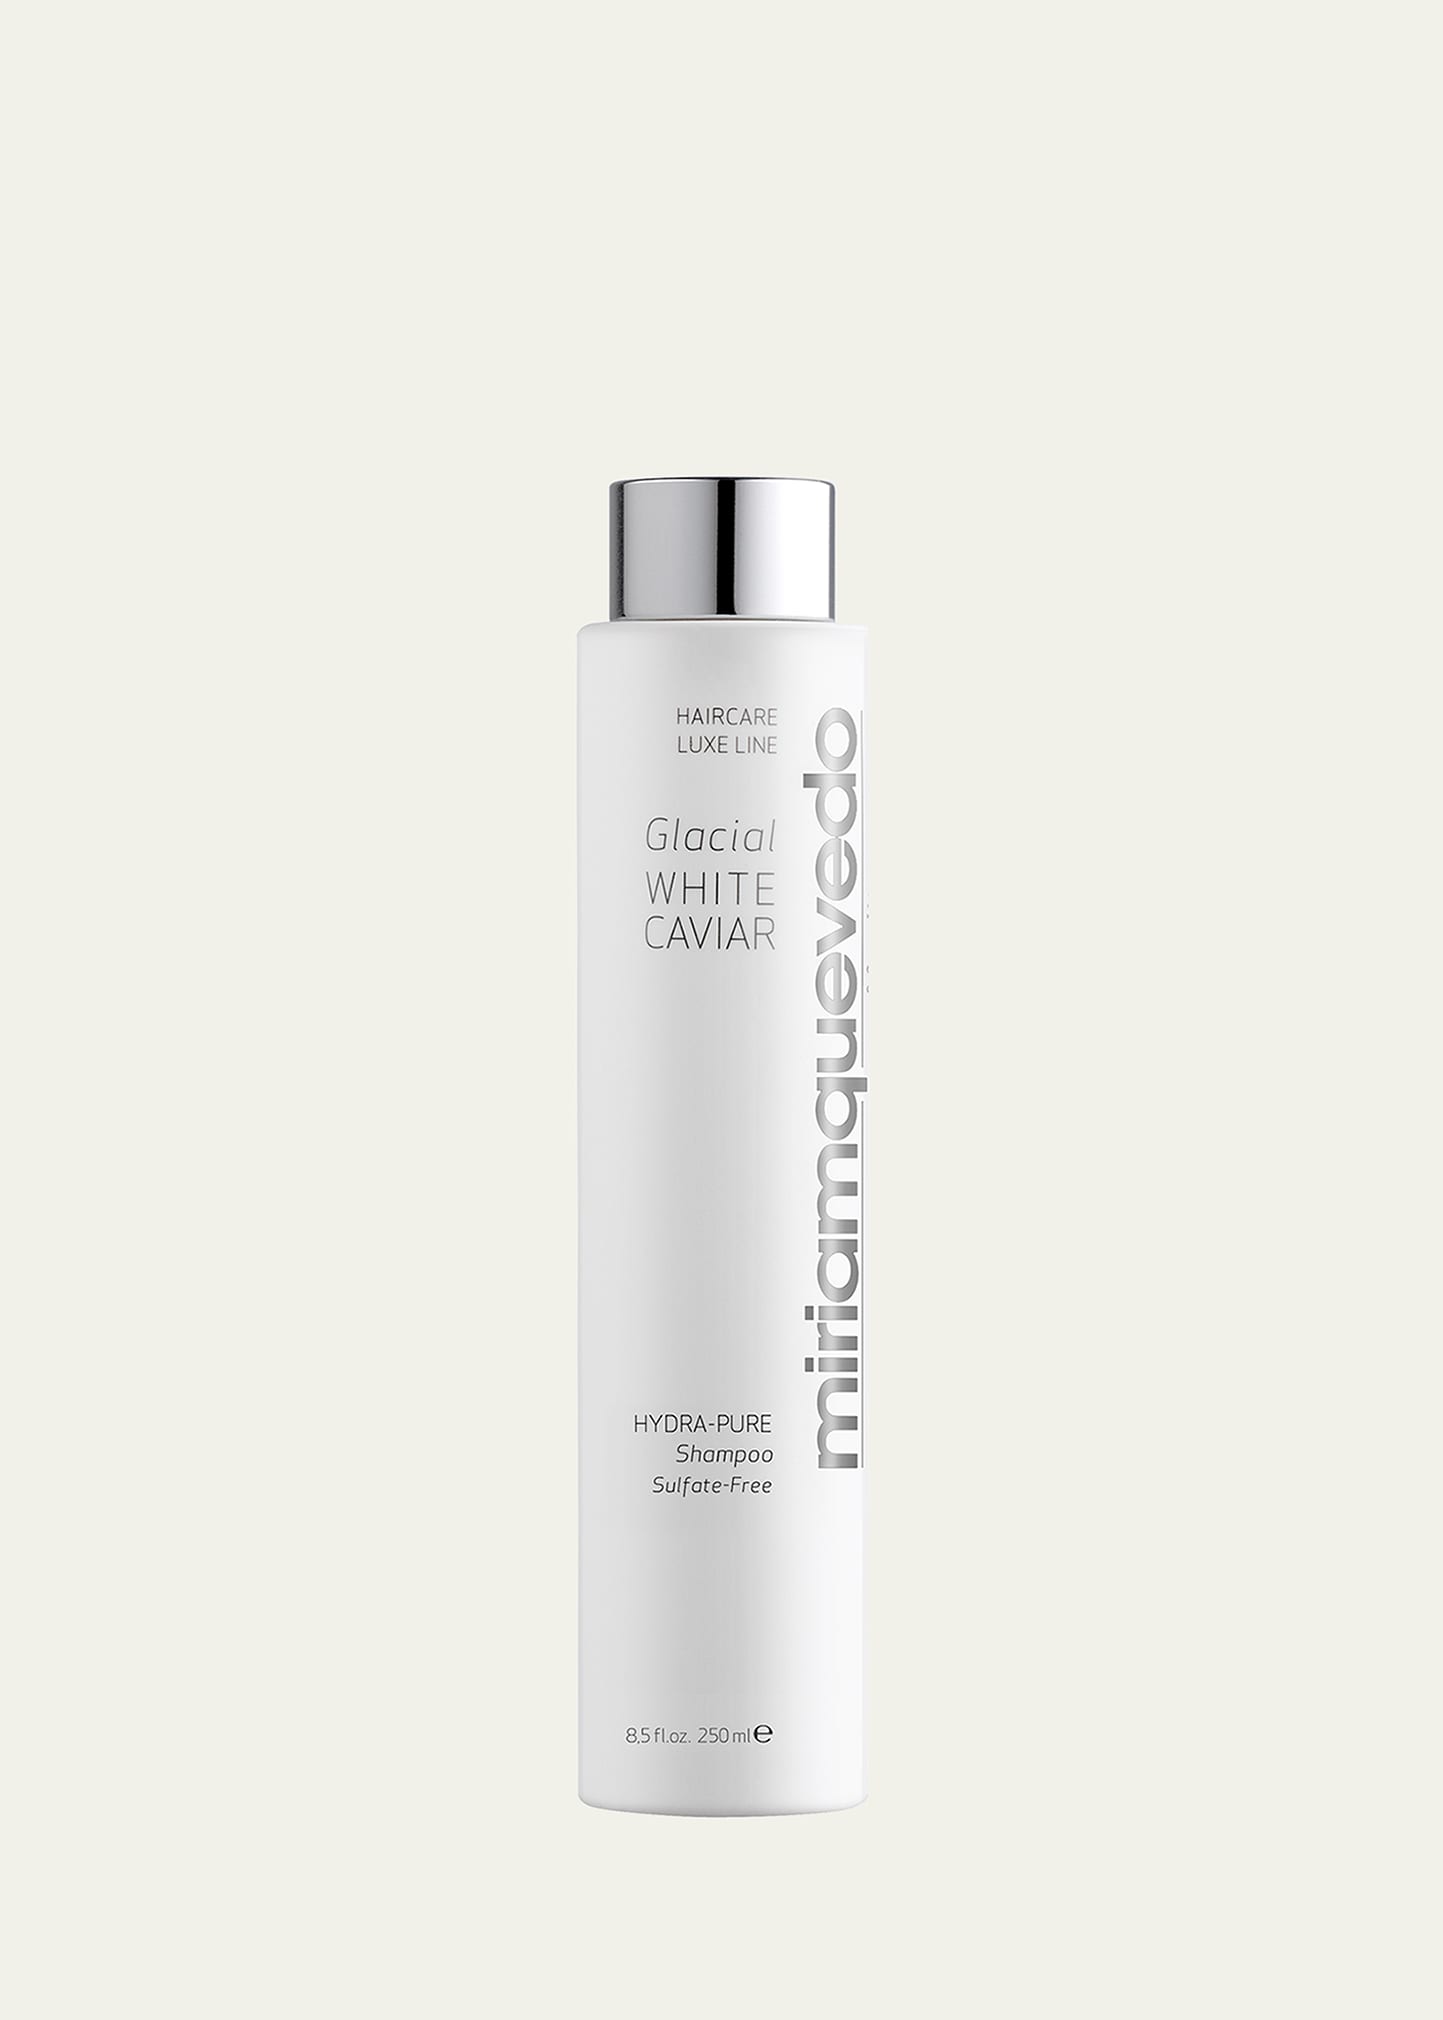 Glacial White Caviar Hydra-Pure Shampoo, 8.5 oz./250mL